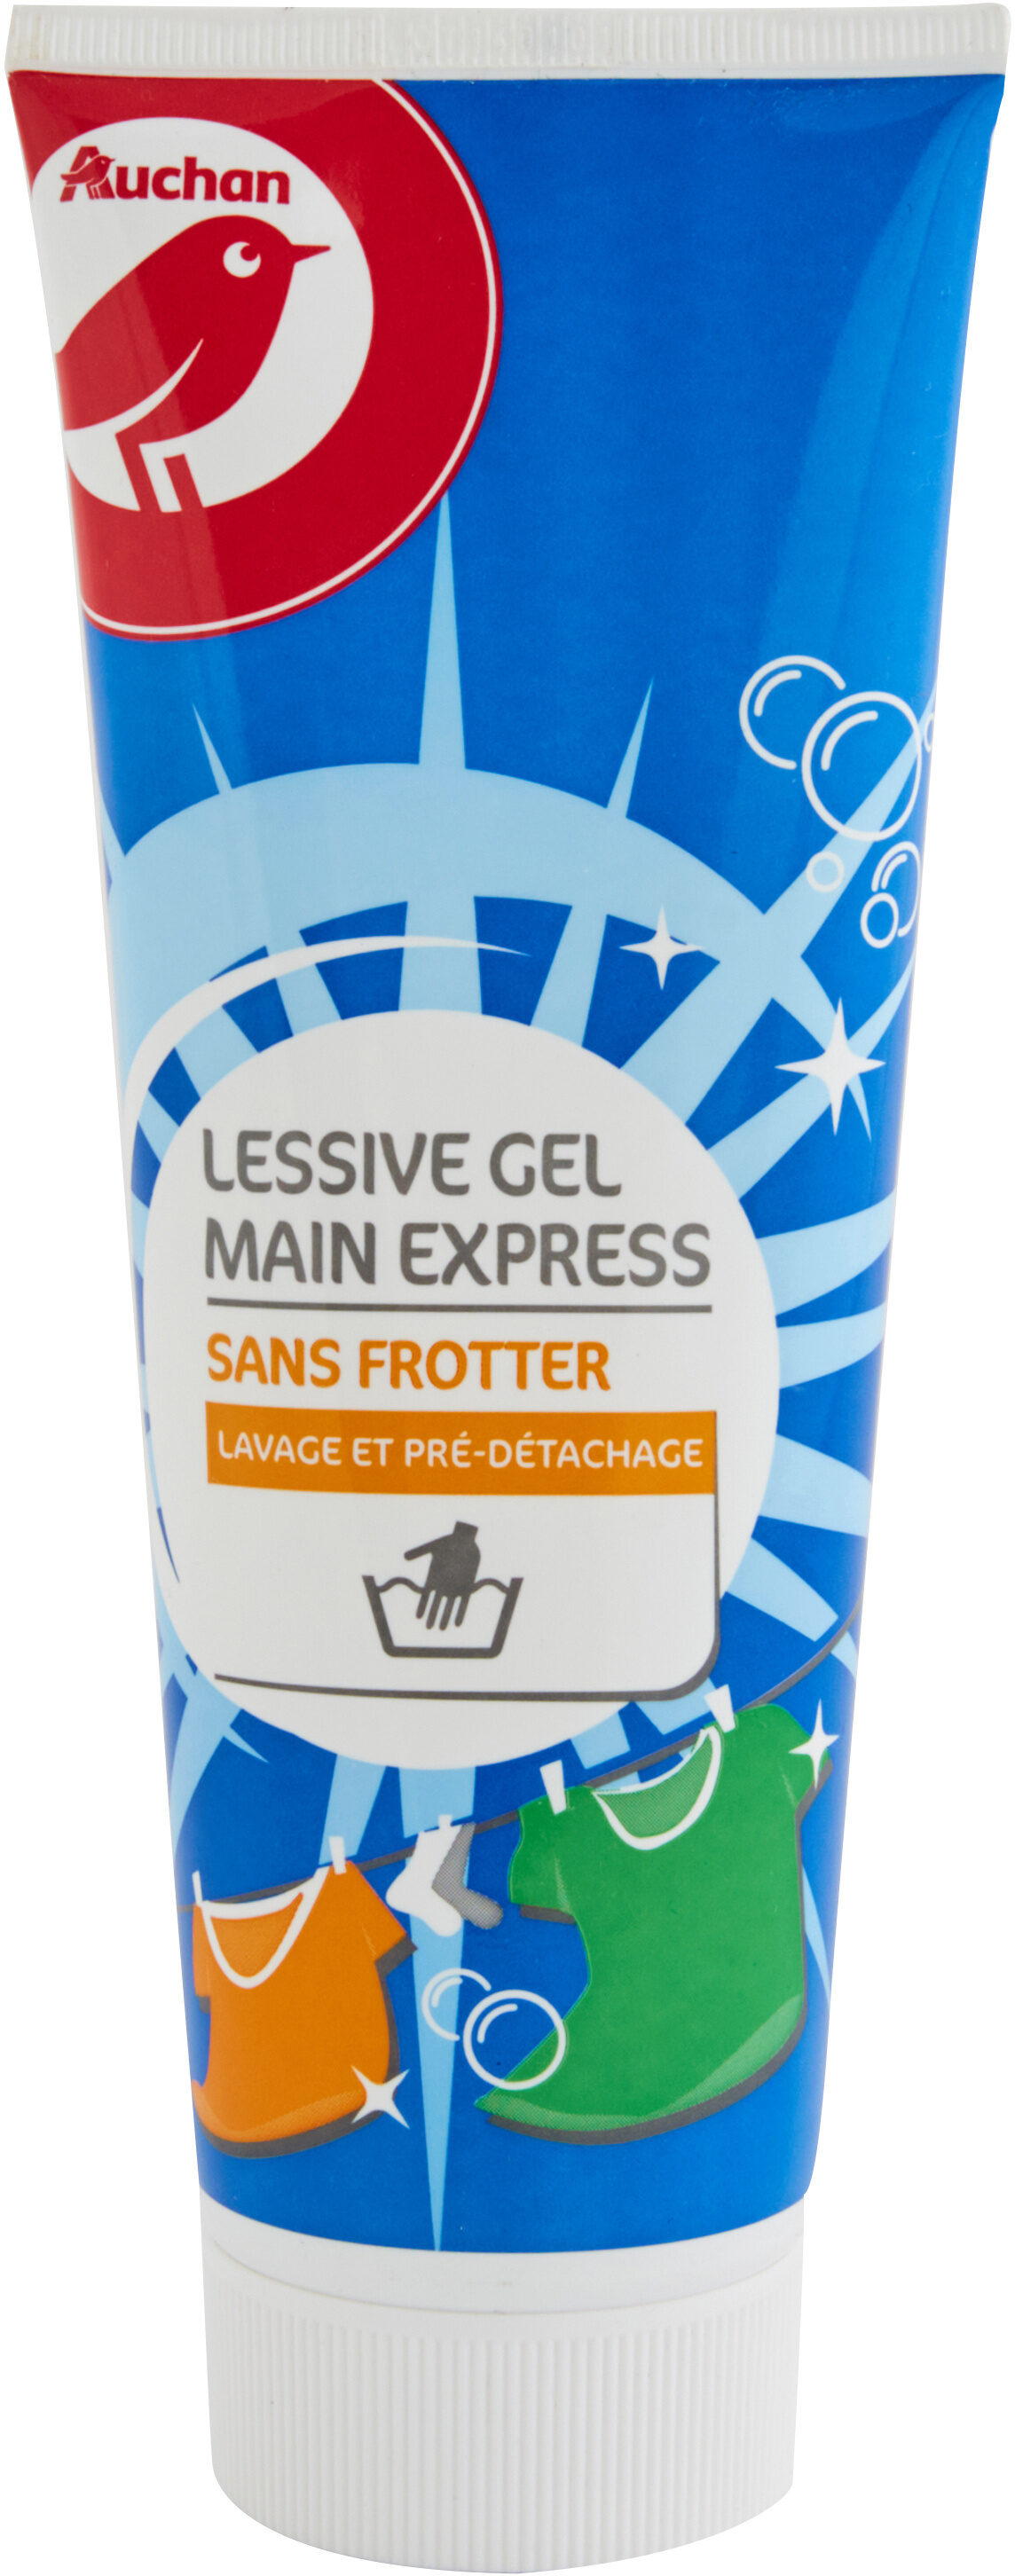 Lessive gel main en tube 250ml - Product - fr